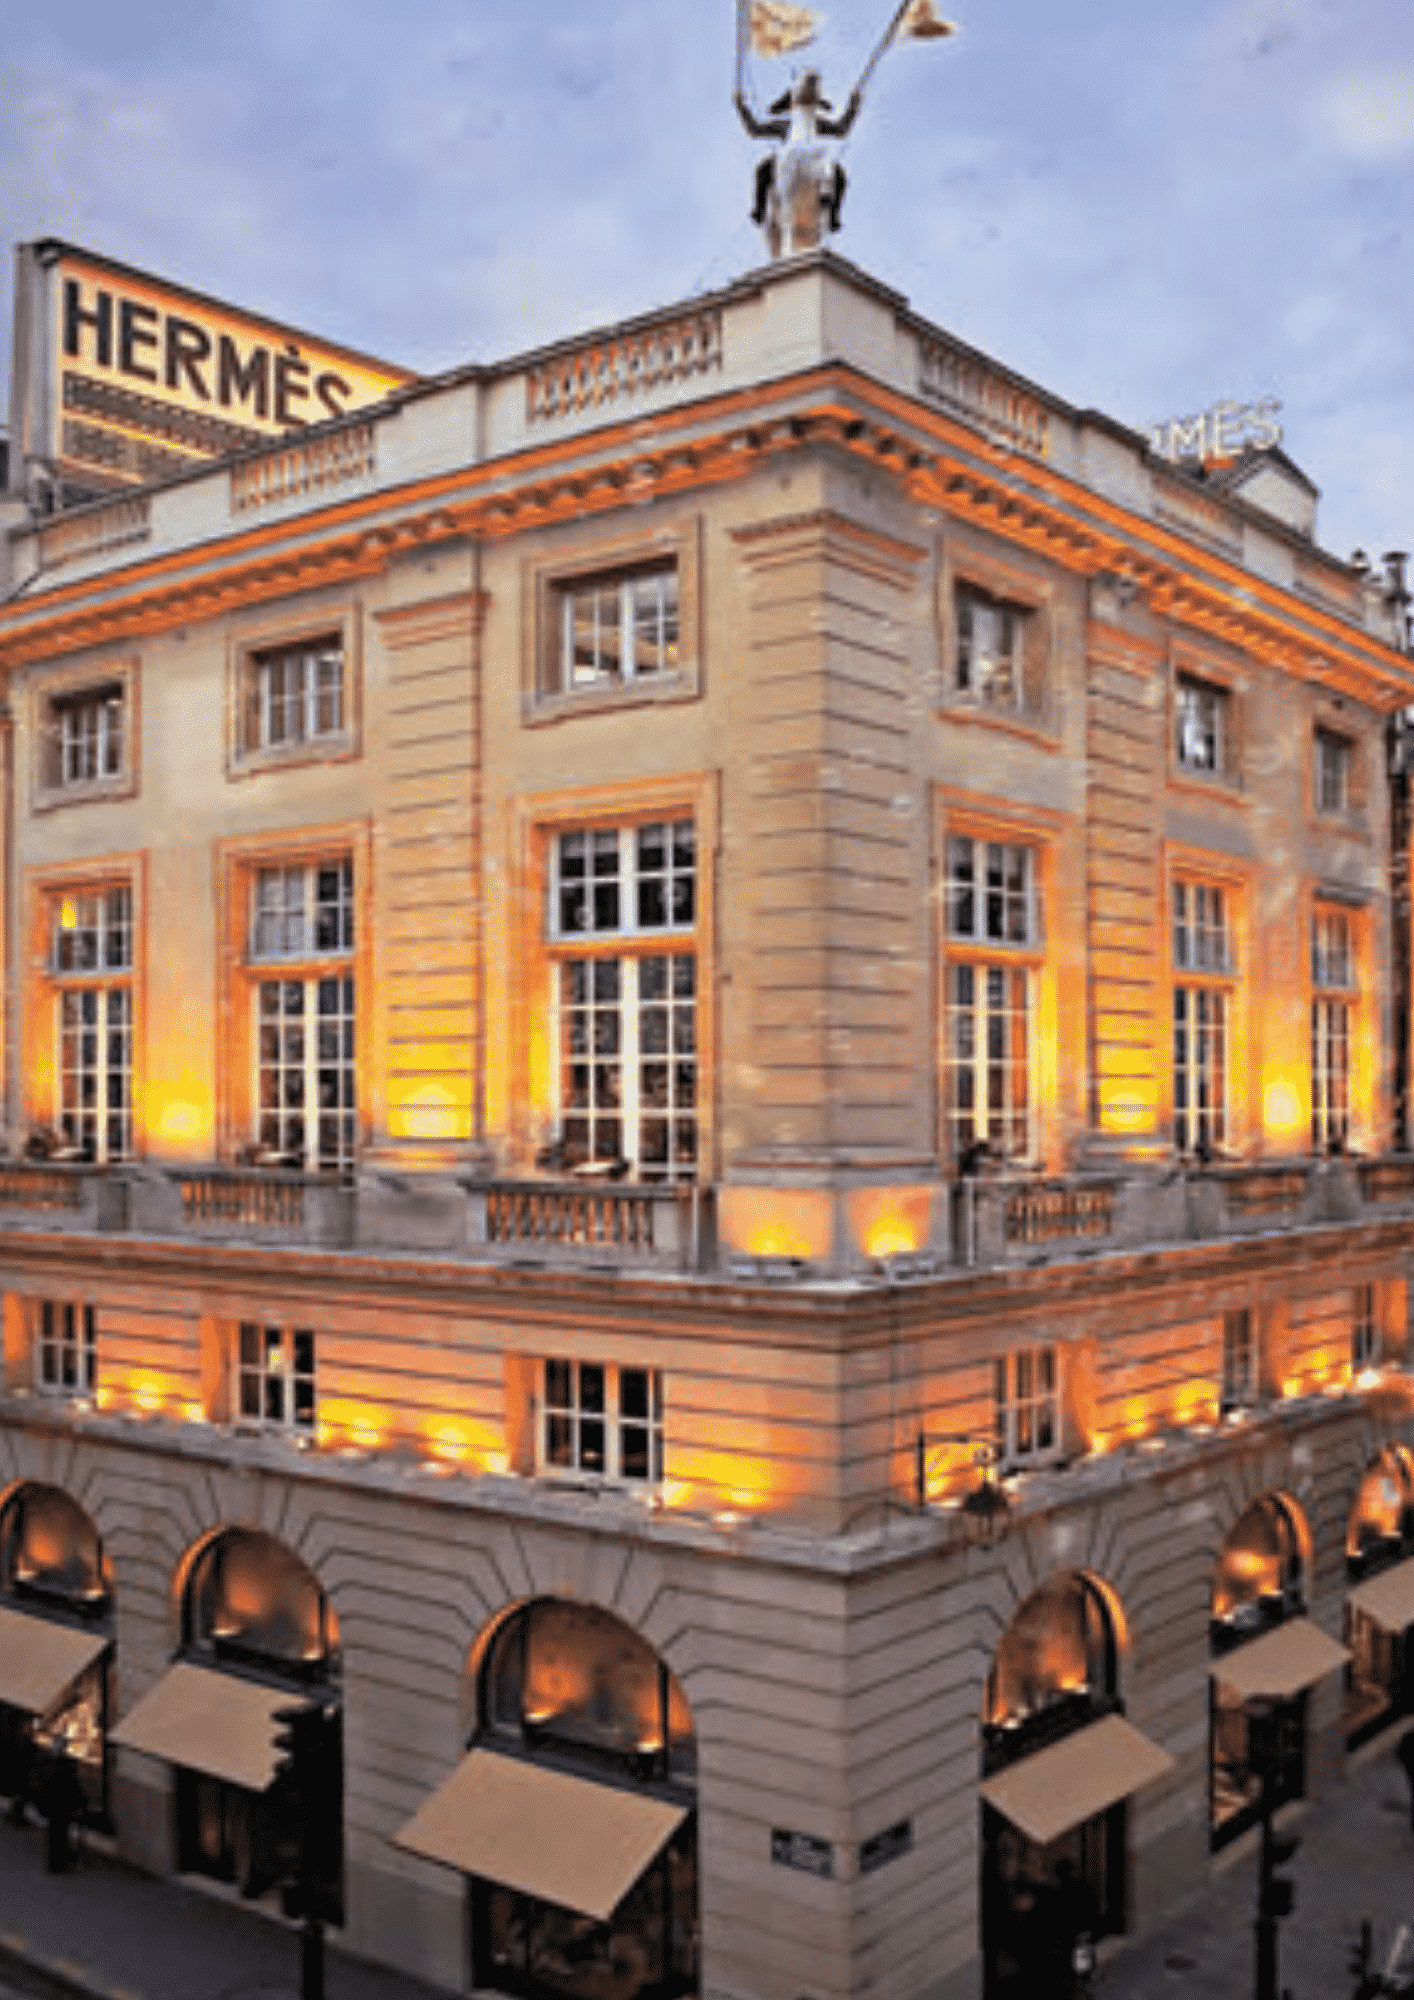 História da Hermès: a marca que é sinônimo de luxo e exclusividade